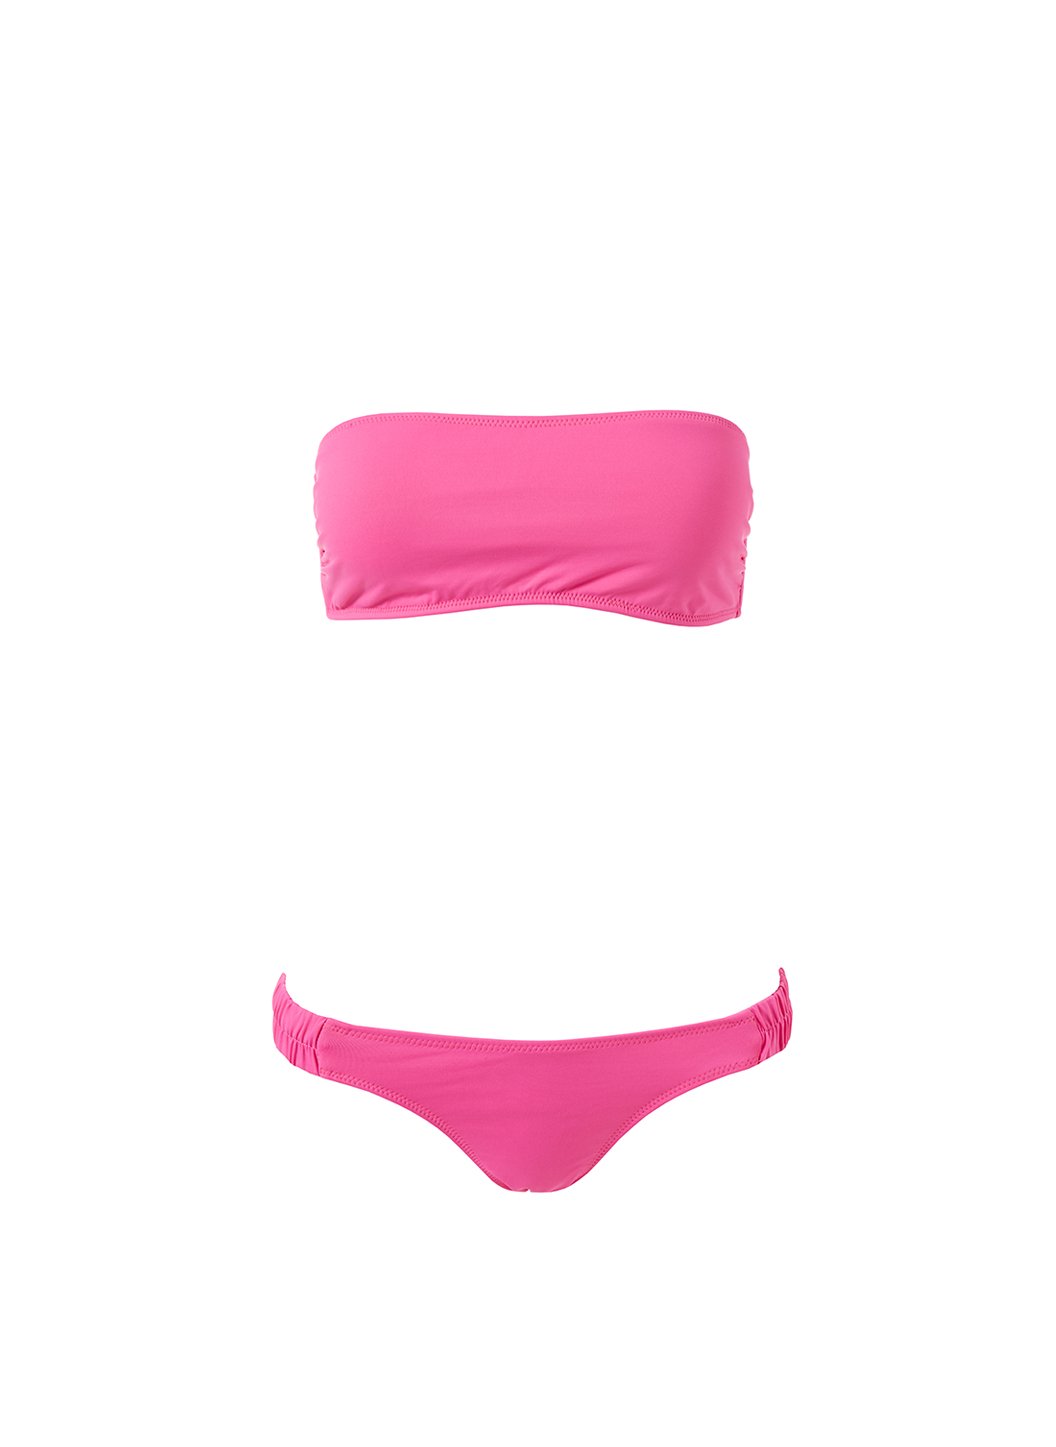 trieste hot pink ruched bandeau bikini Cutout